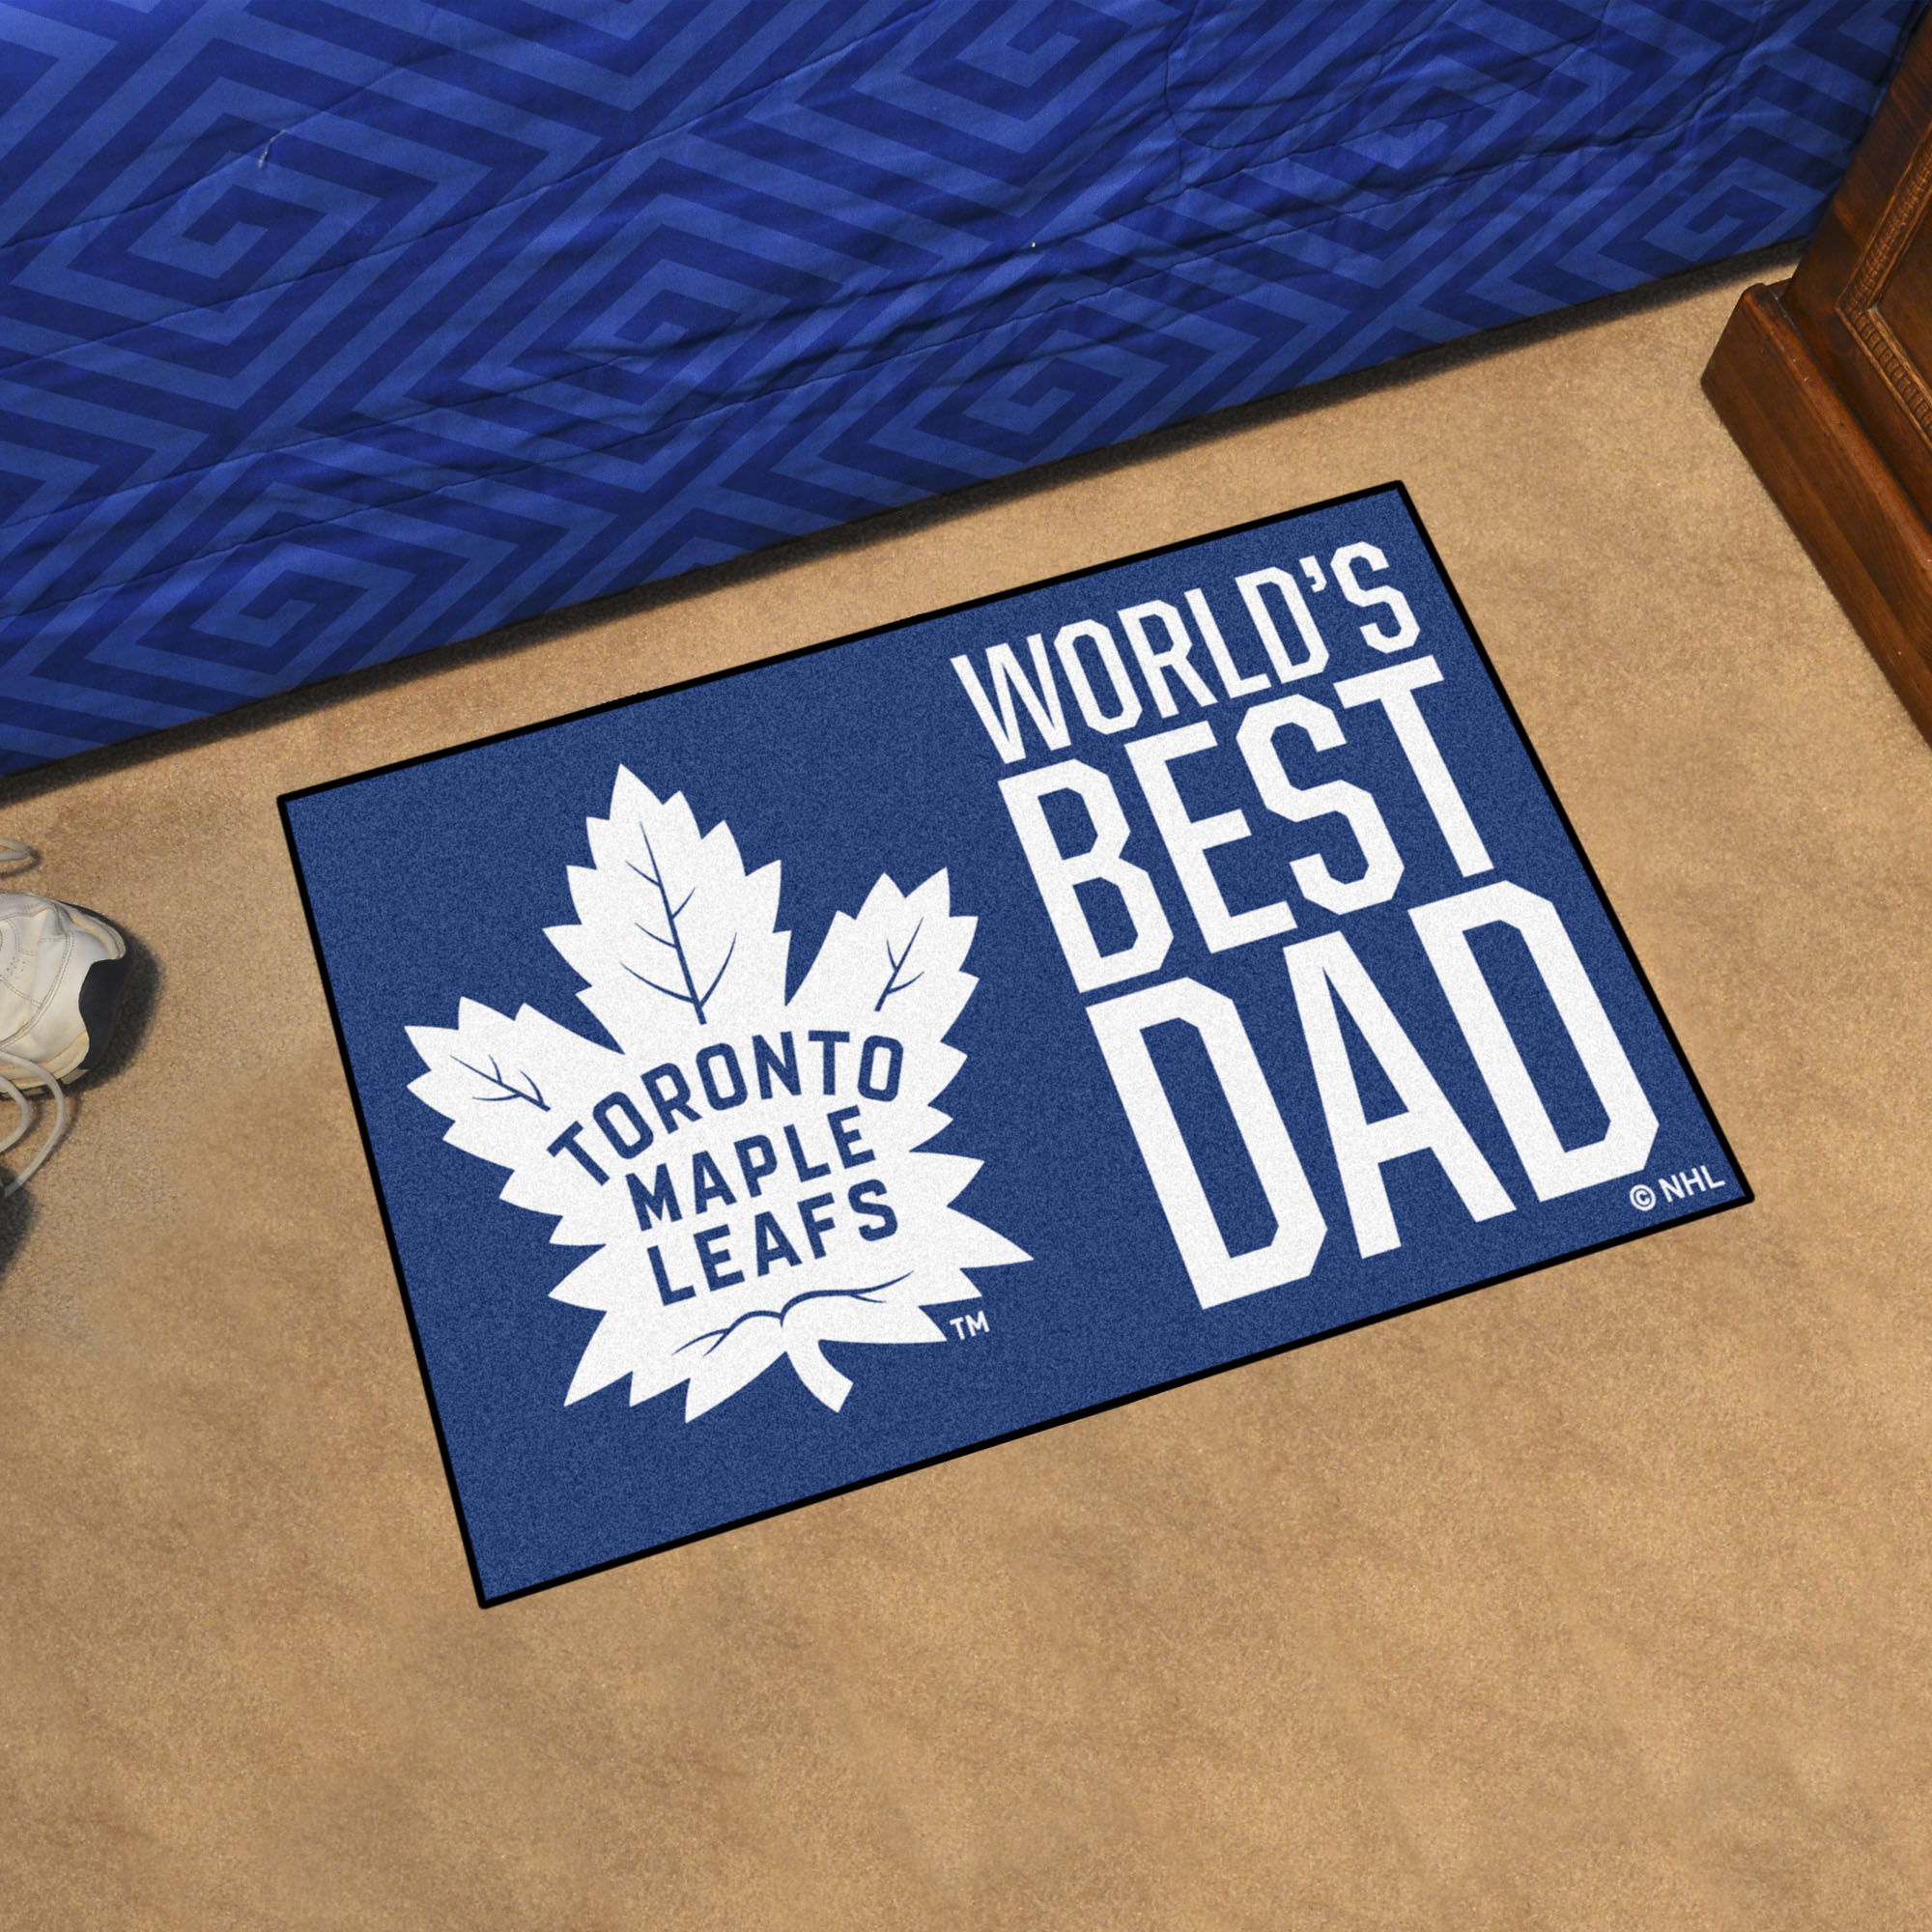 Toronto Maple Leafs Leafs World's Best Dad Starter Doormat - 19x30